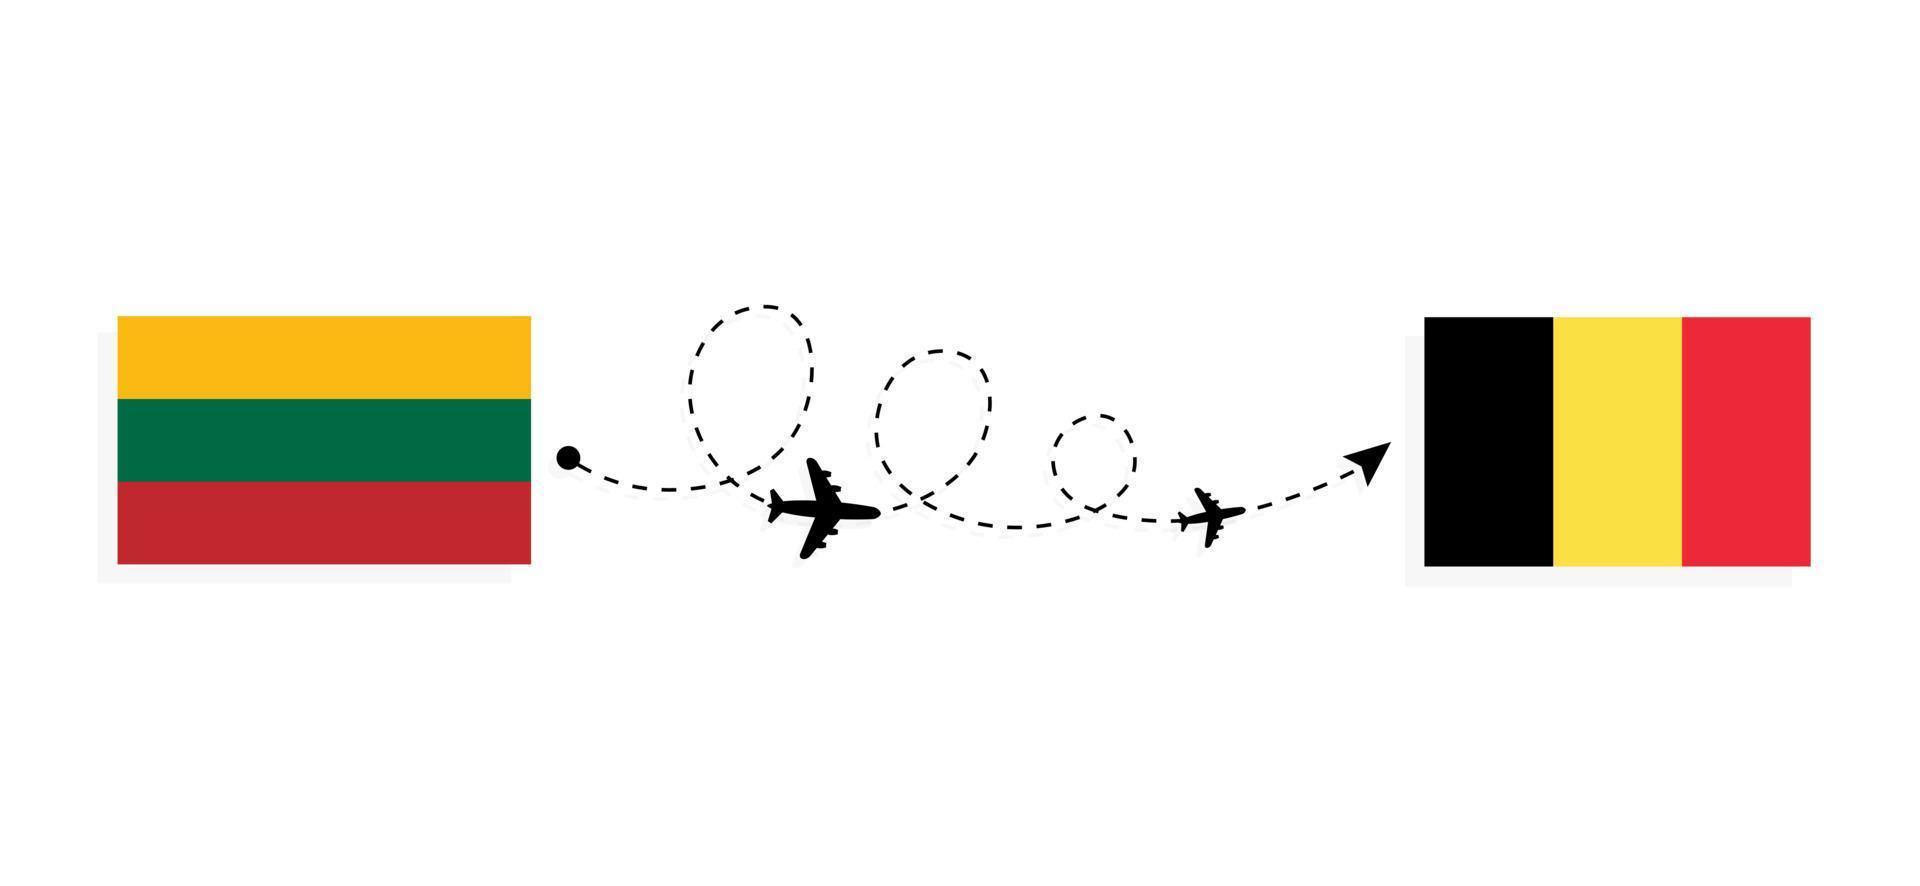 flyg och resor från Litauen till Belgien med passagerarflygplan vektor